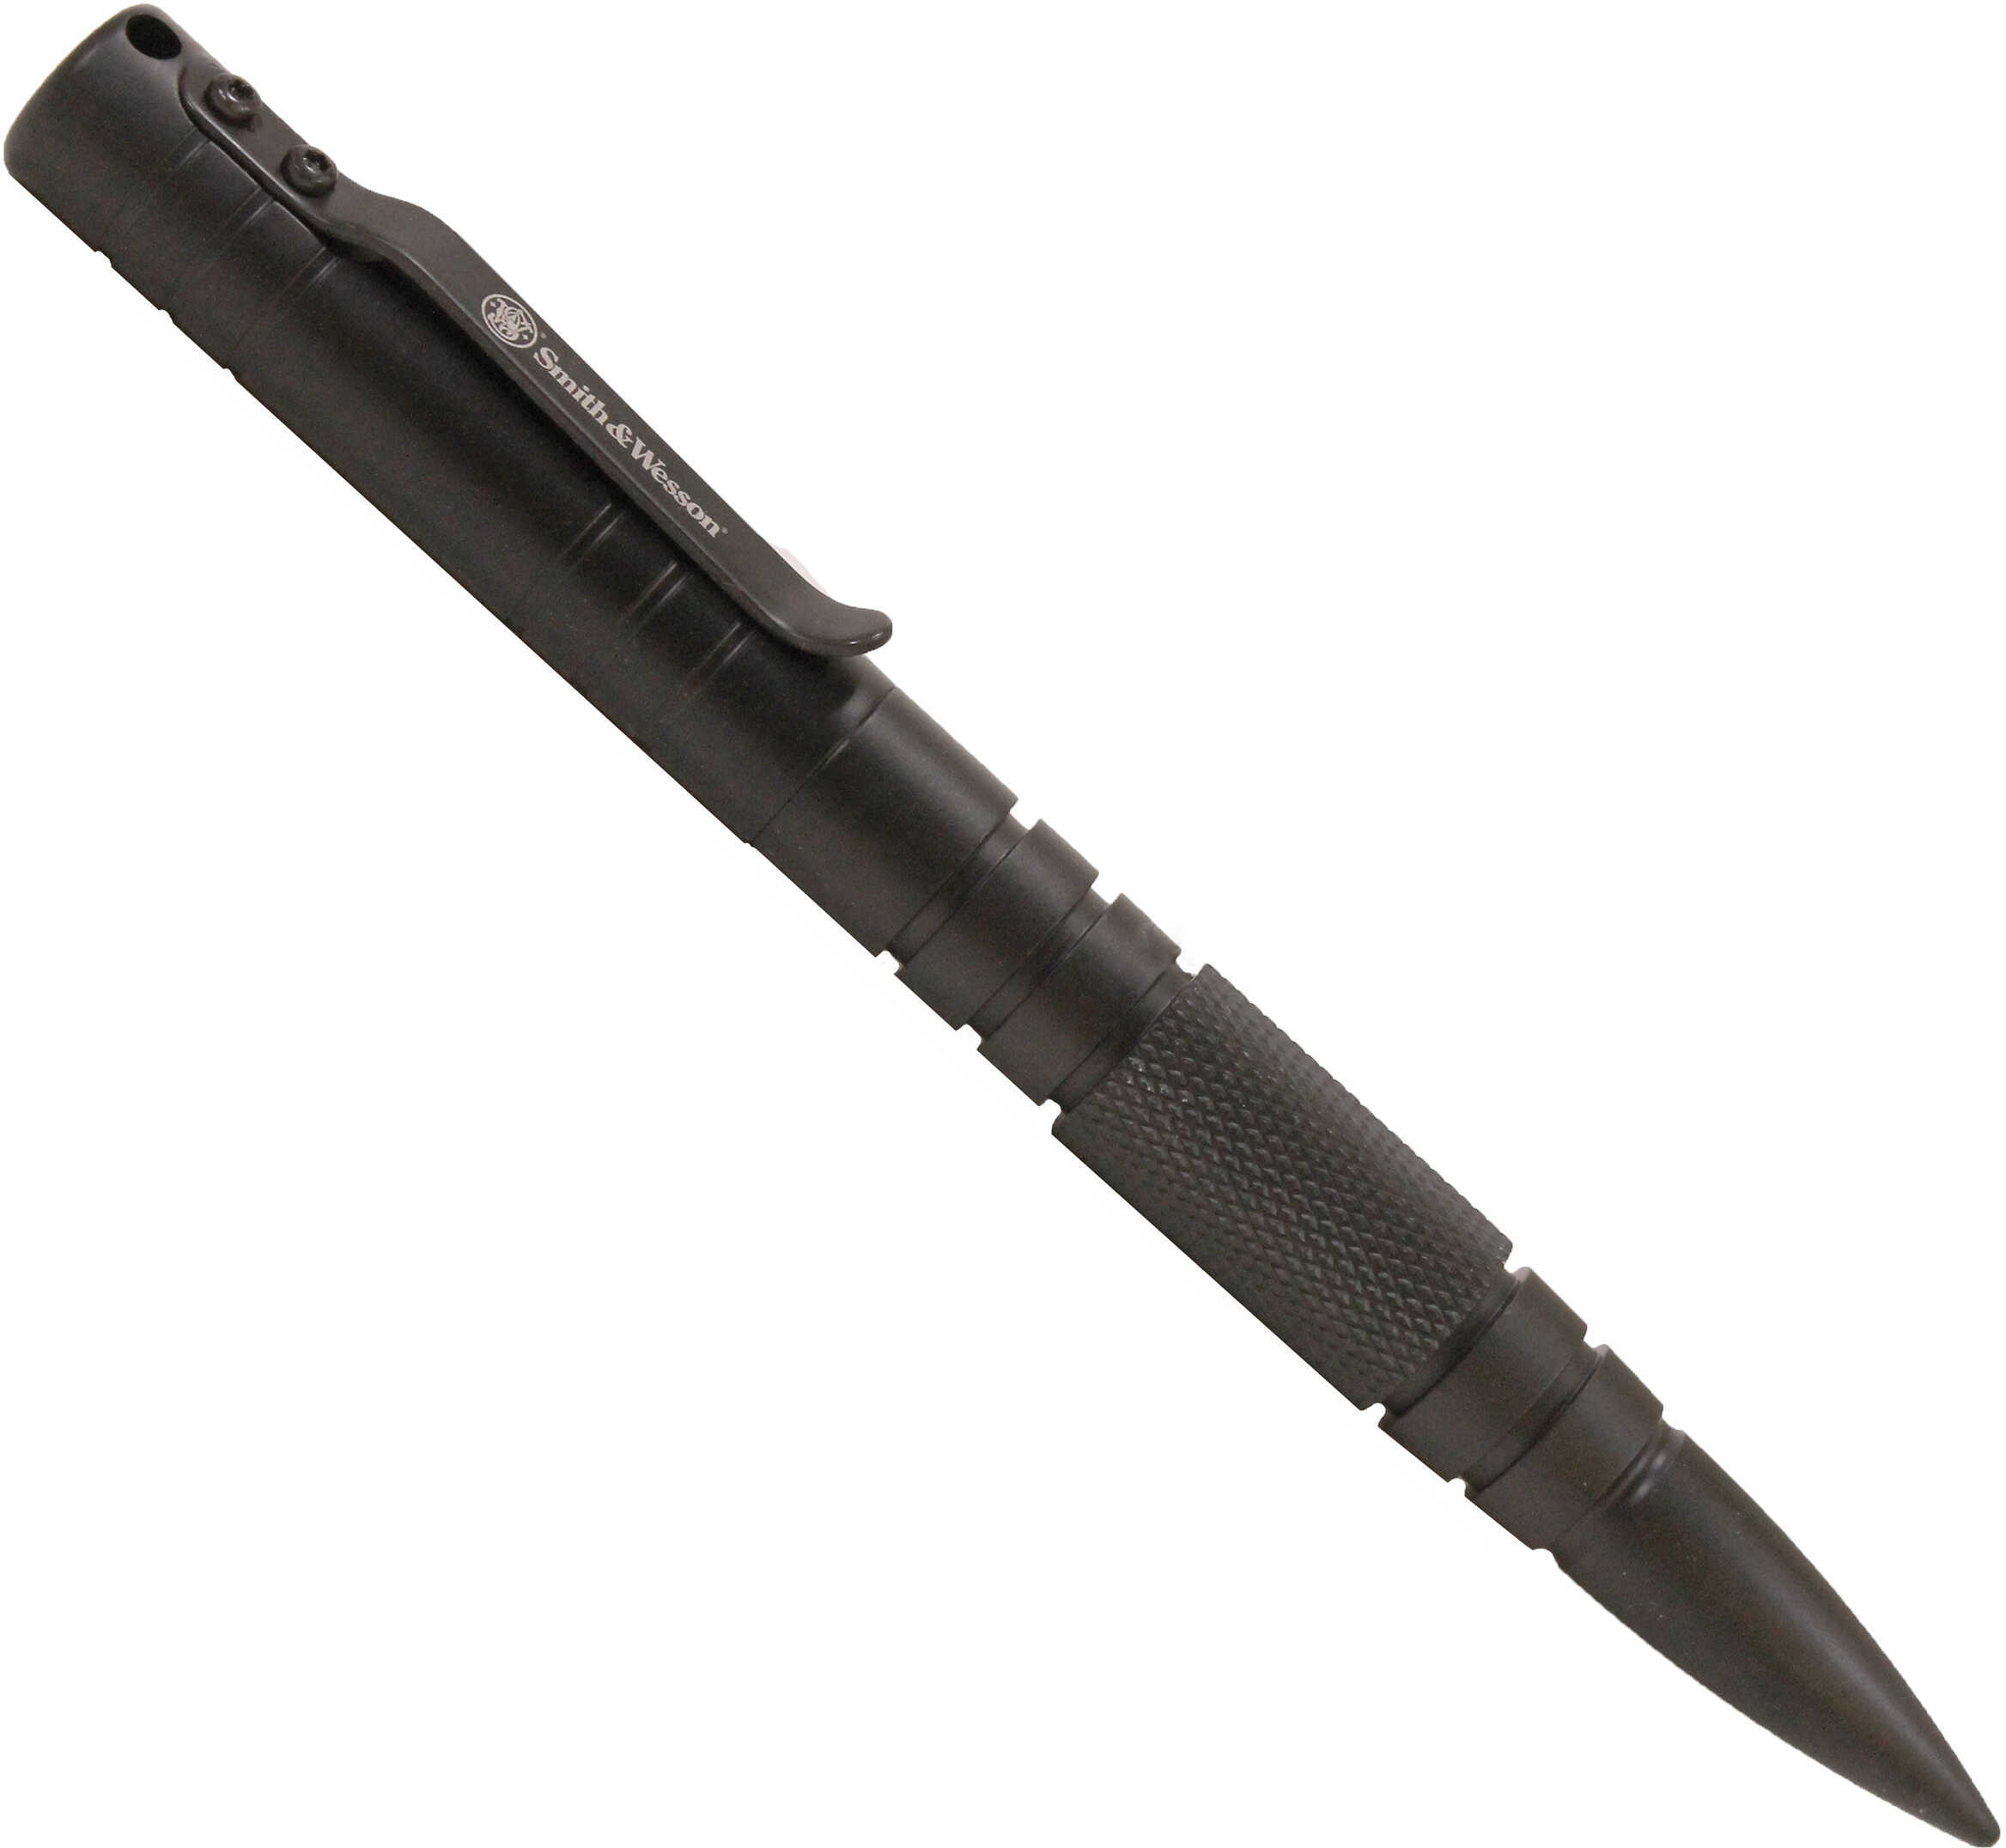 Smith & Wesson M&P Tactical Pen Black SWPENMPBK